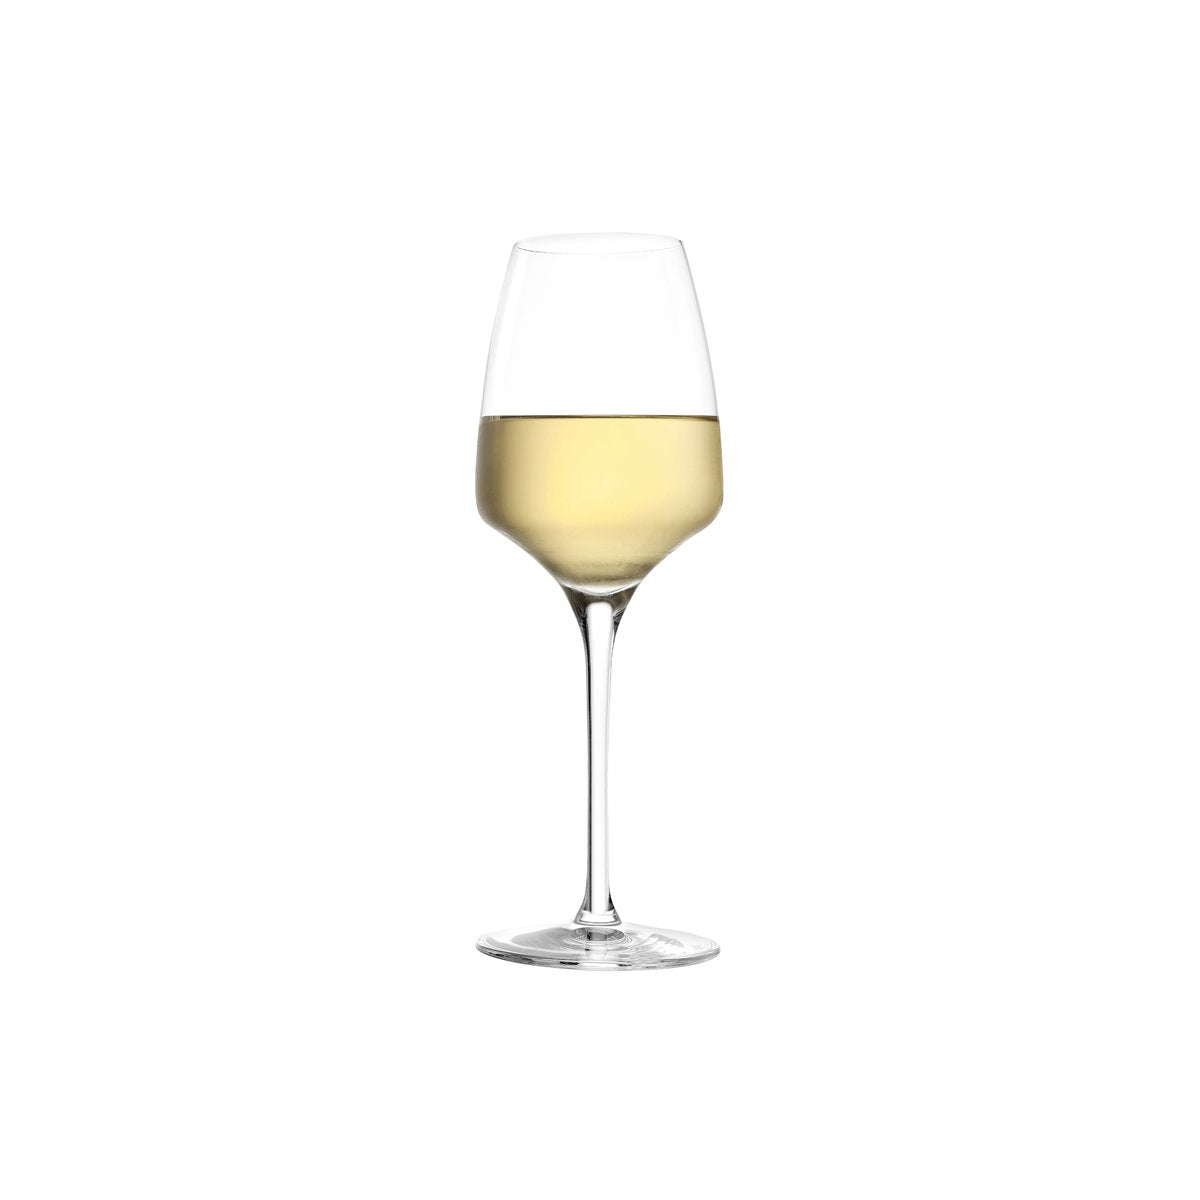 360-965 Stolzle Experience White Wine 285ml Tomkin Australia Hospitality Supplies